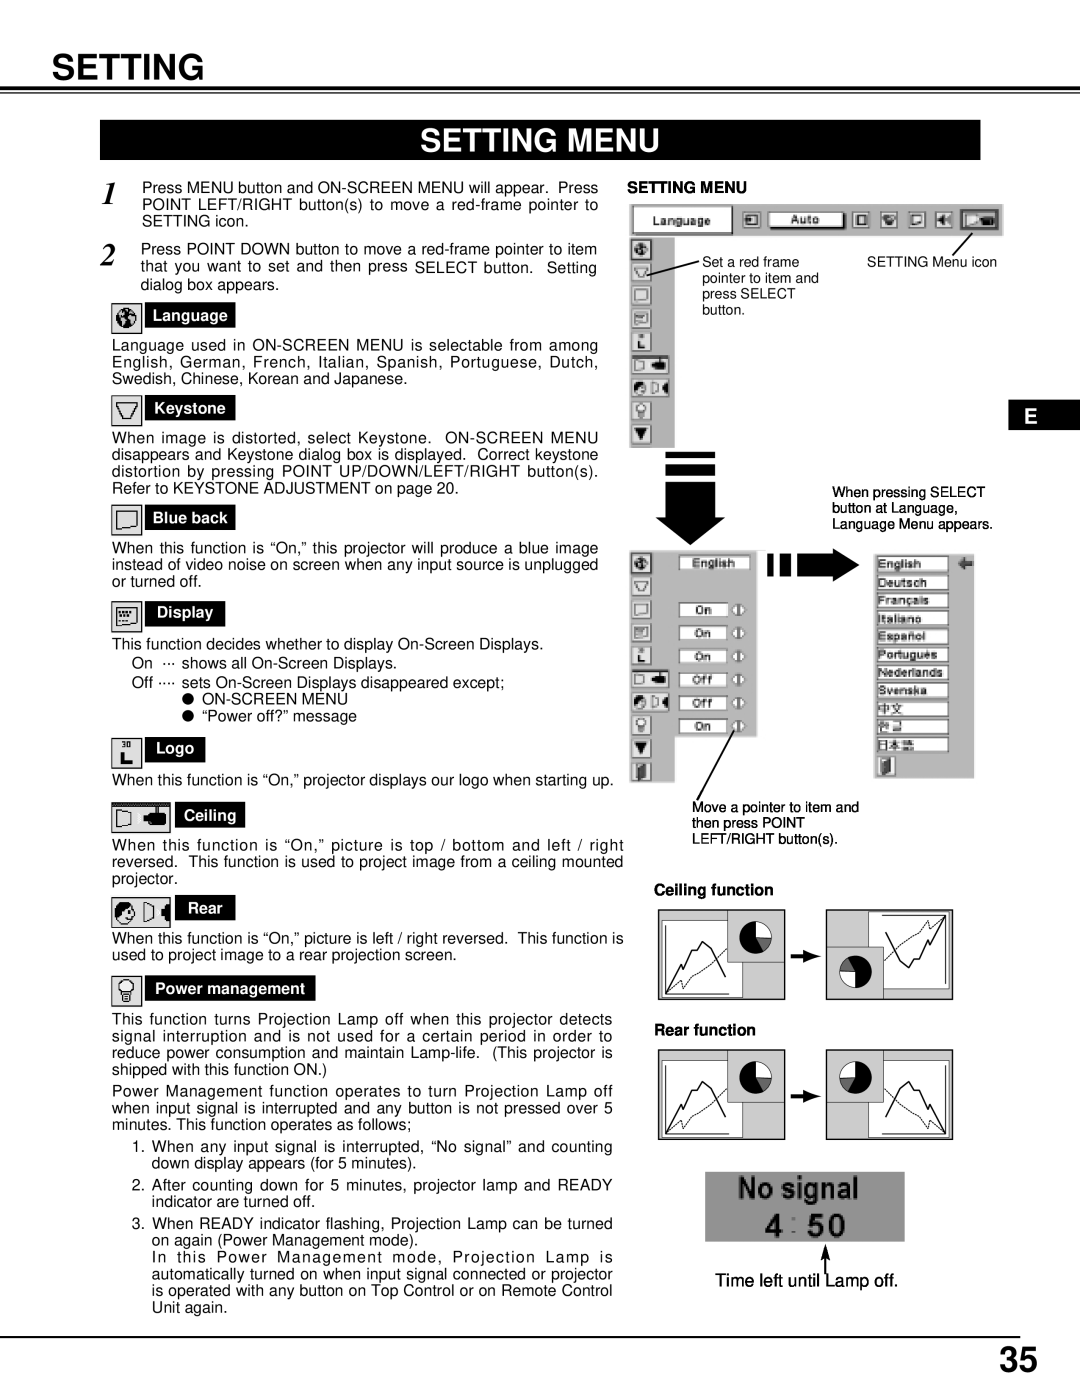 InFocus DP9295 manual Setting Menu, Ceiling function, Rear function 